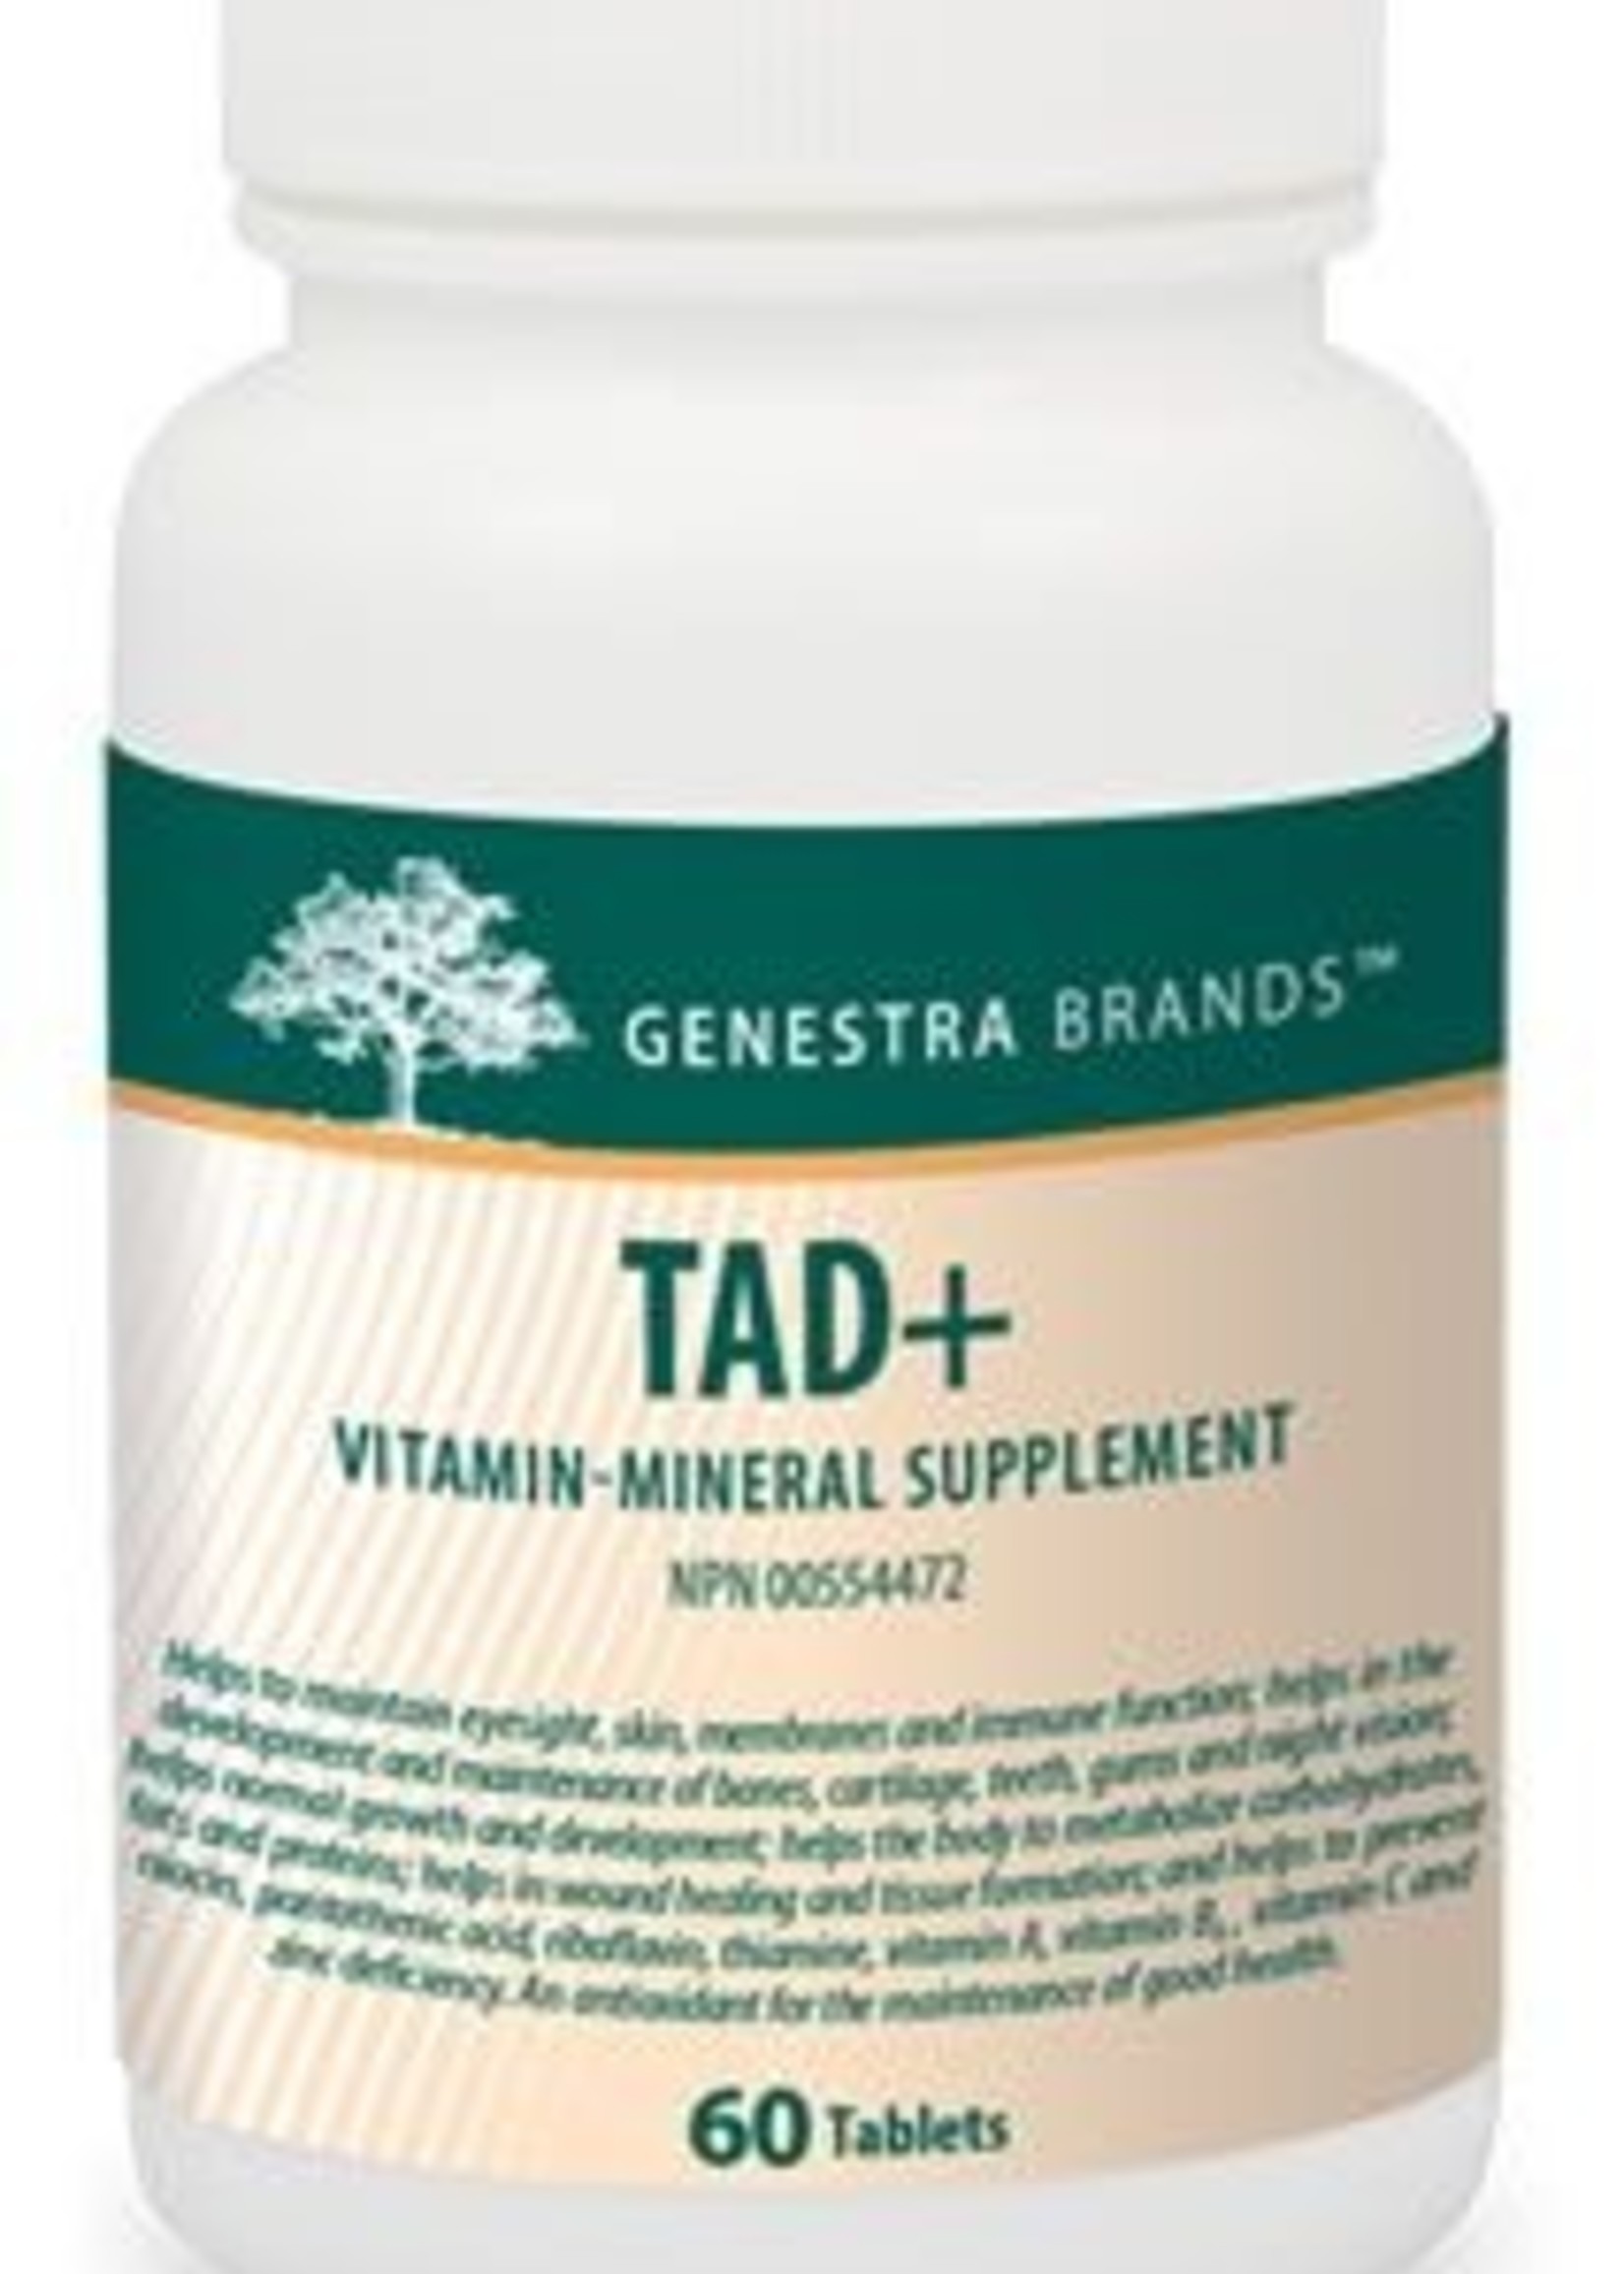 Genestra Tad + – 60 Tablets